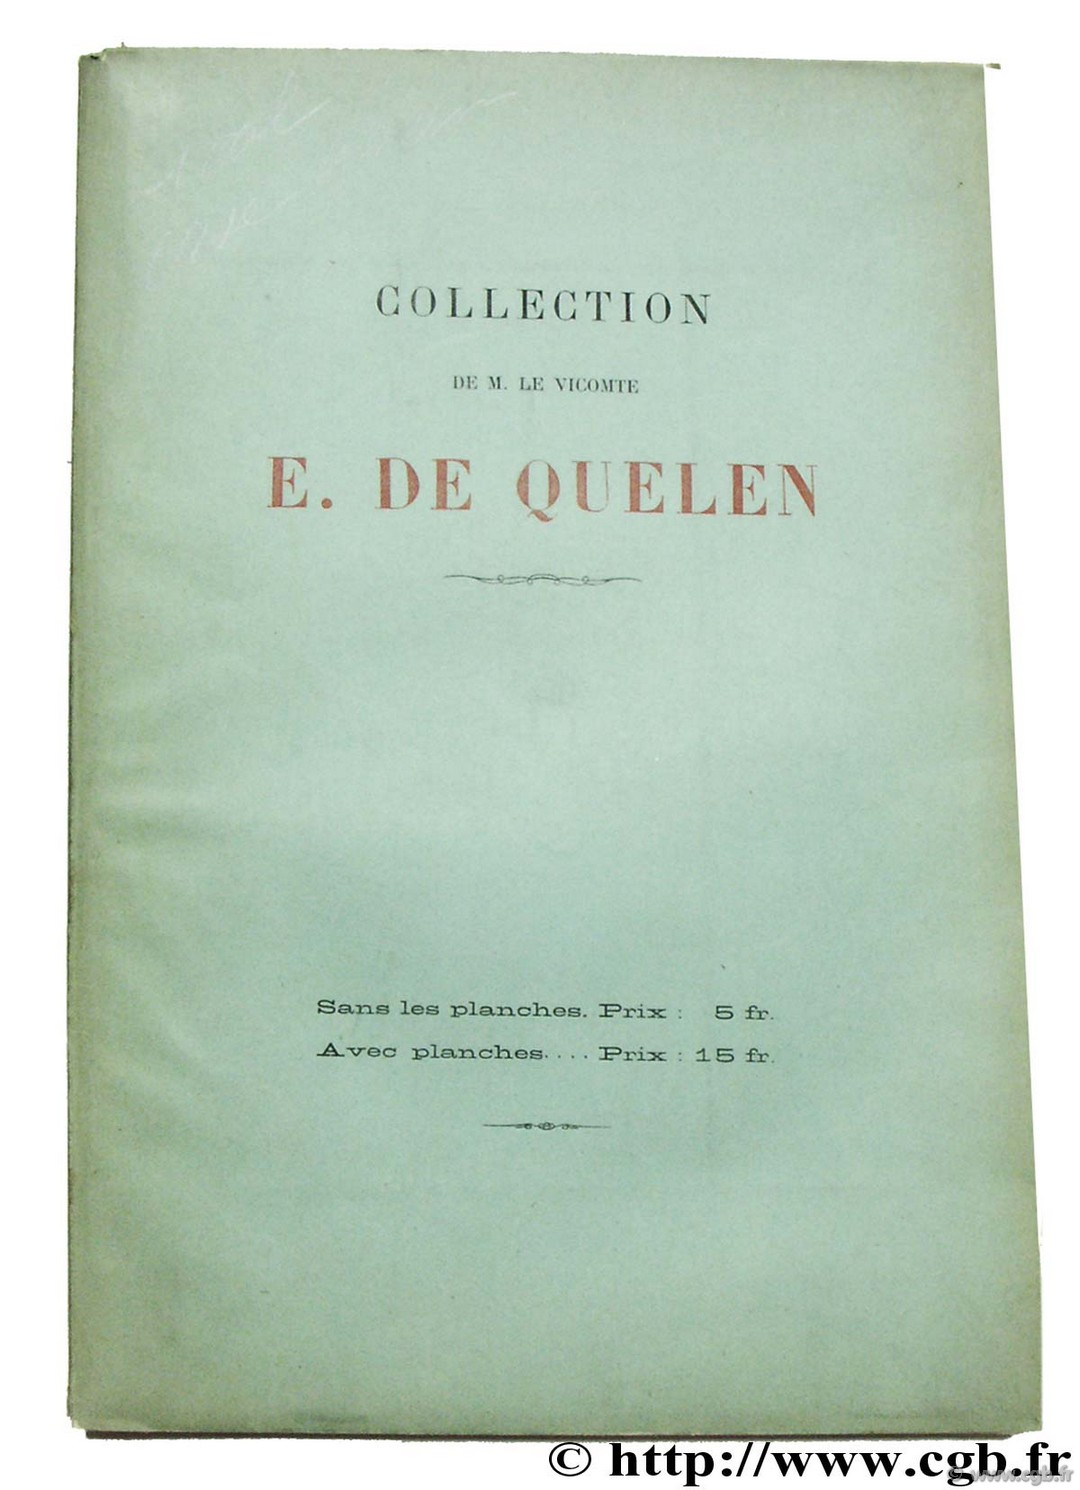 Collection de M. le Vicomte E. de Quelen 